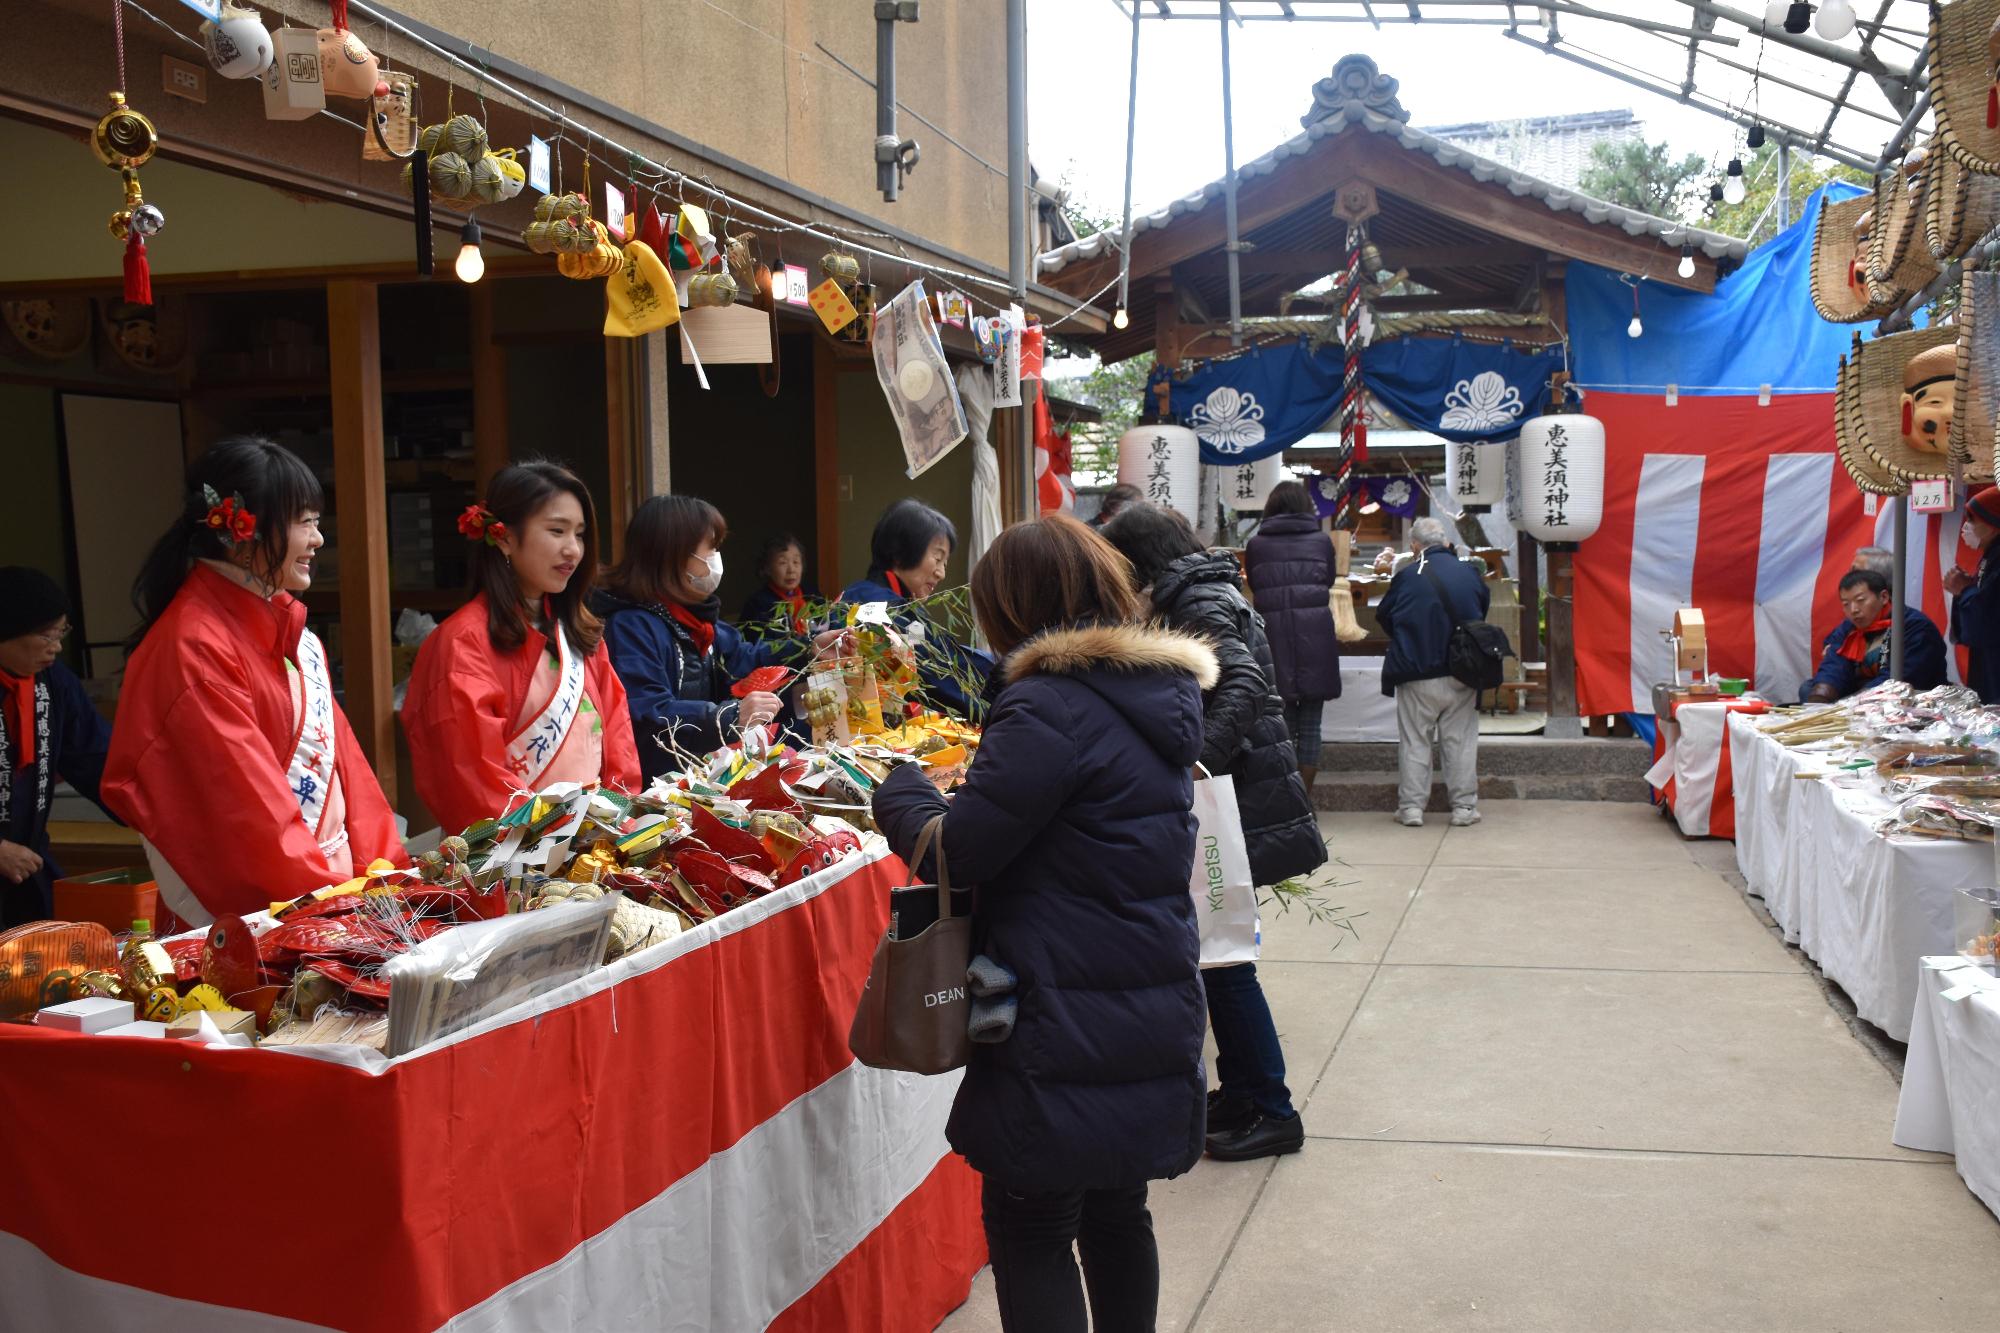 塩町恵美須神社の境内で赤い服着た女性たちがお守り販売している様子の写真